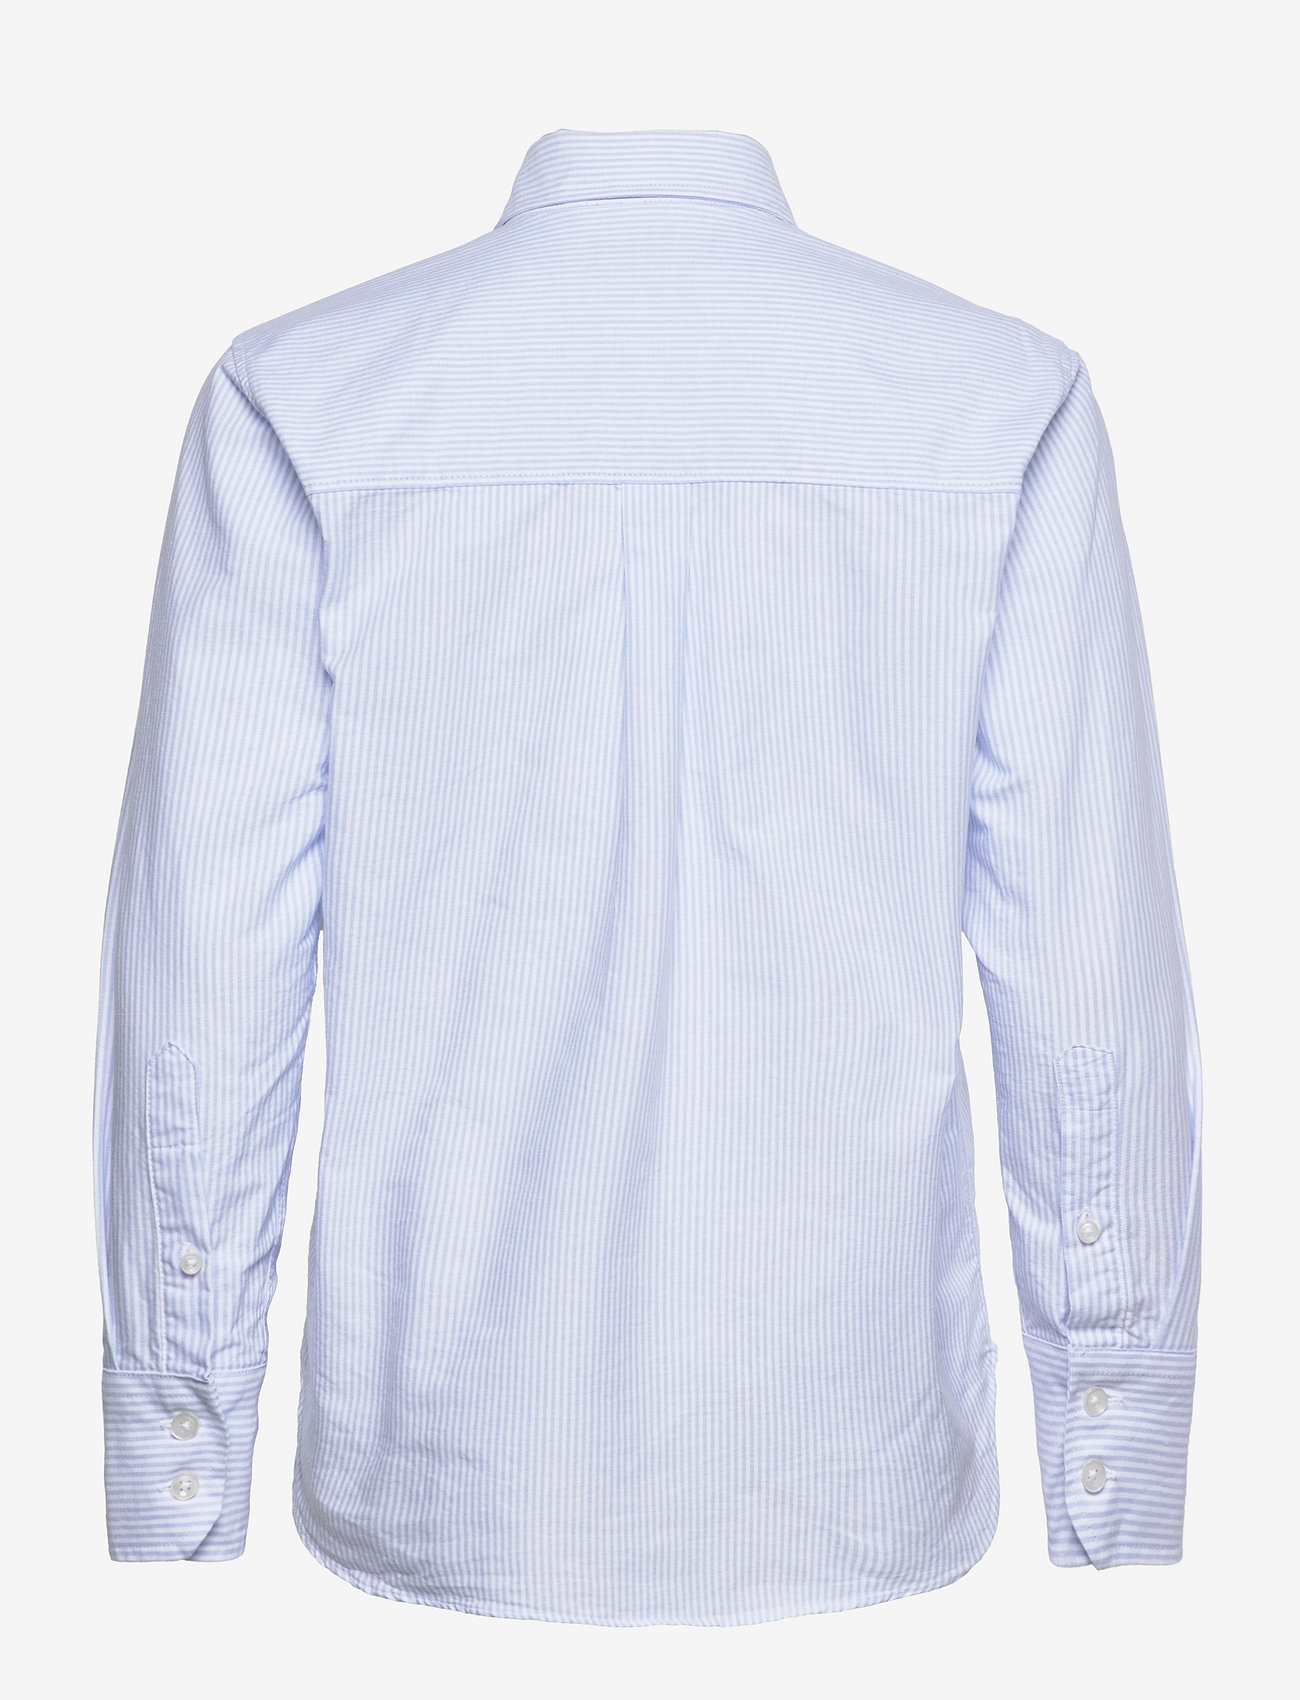 SAND - Oxford Striped W - Iveris - langærmede skjorter - light blue - 1